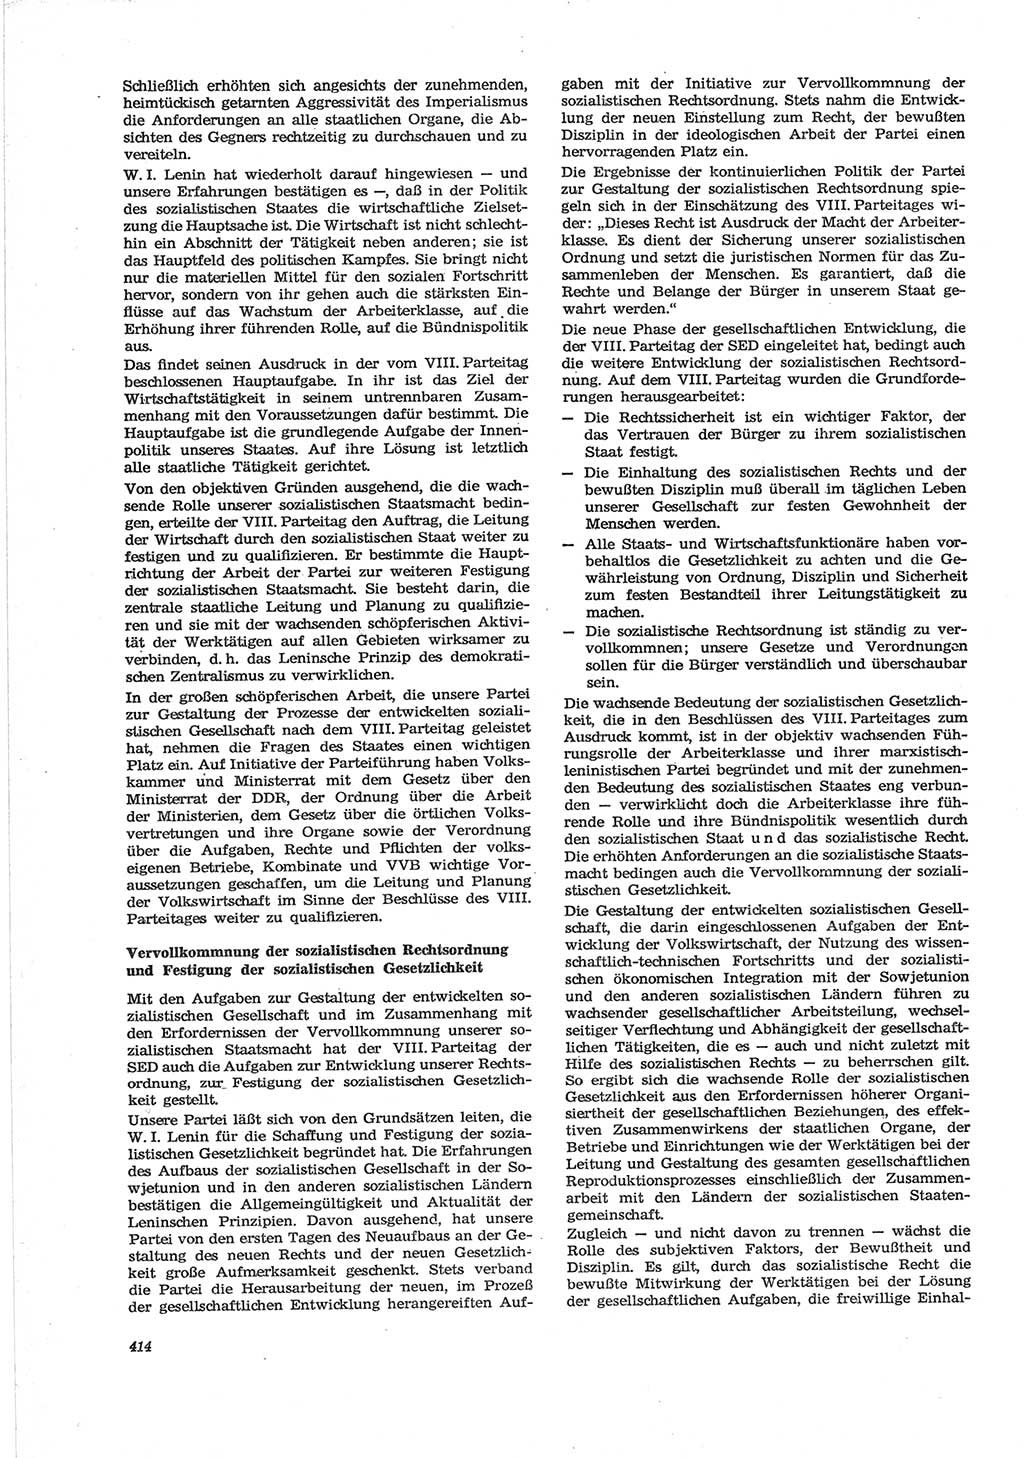 Neue Justiz (NJ), Zeitschrift für Recht und Rechtswissenschaft [Deutsche Demokratische Republik (DDR)], 28. Jahrgang 1974, Seite 414 (NJ DDR 1974, S. 414)